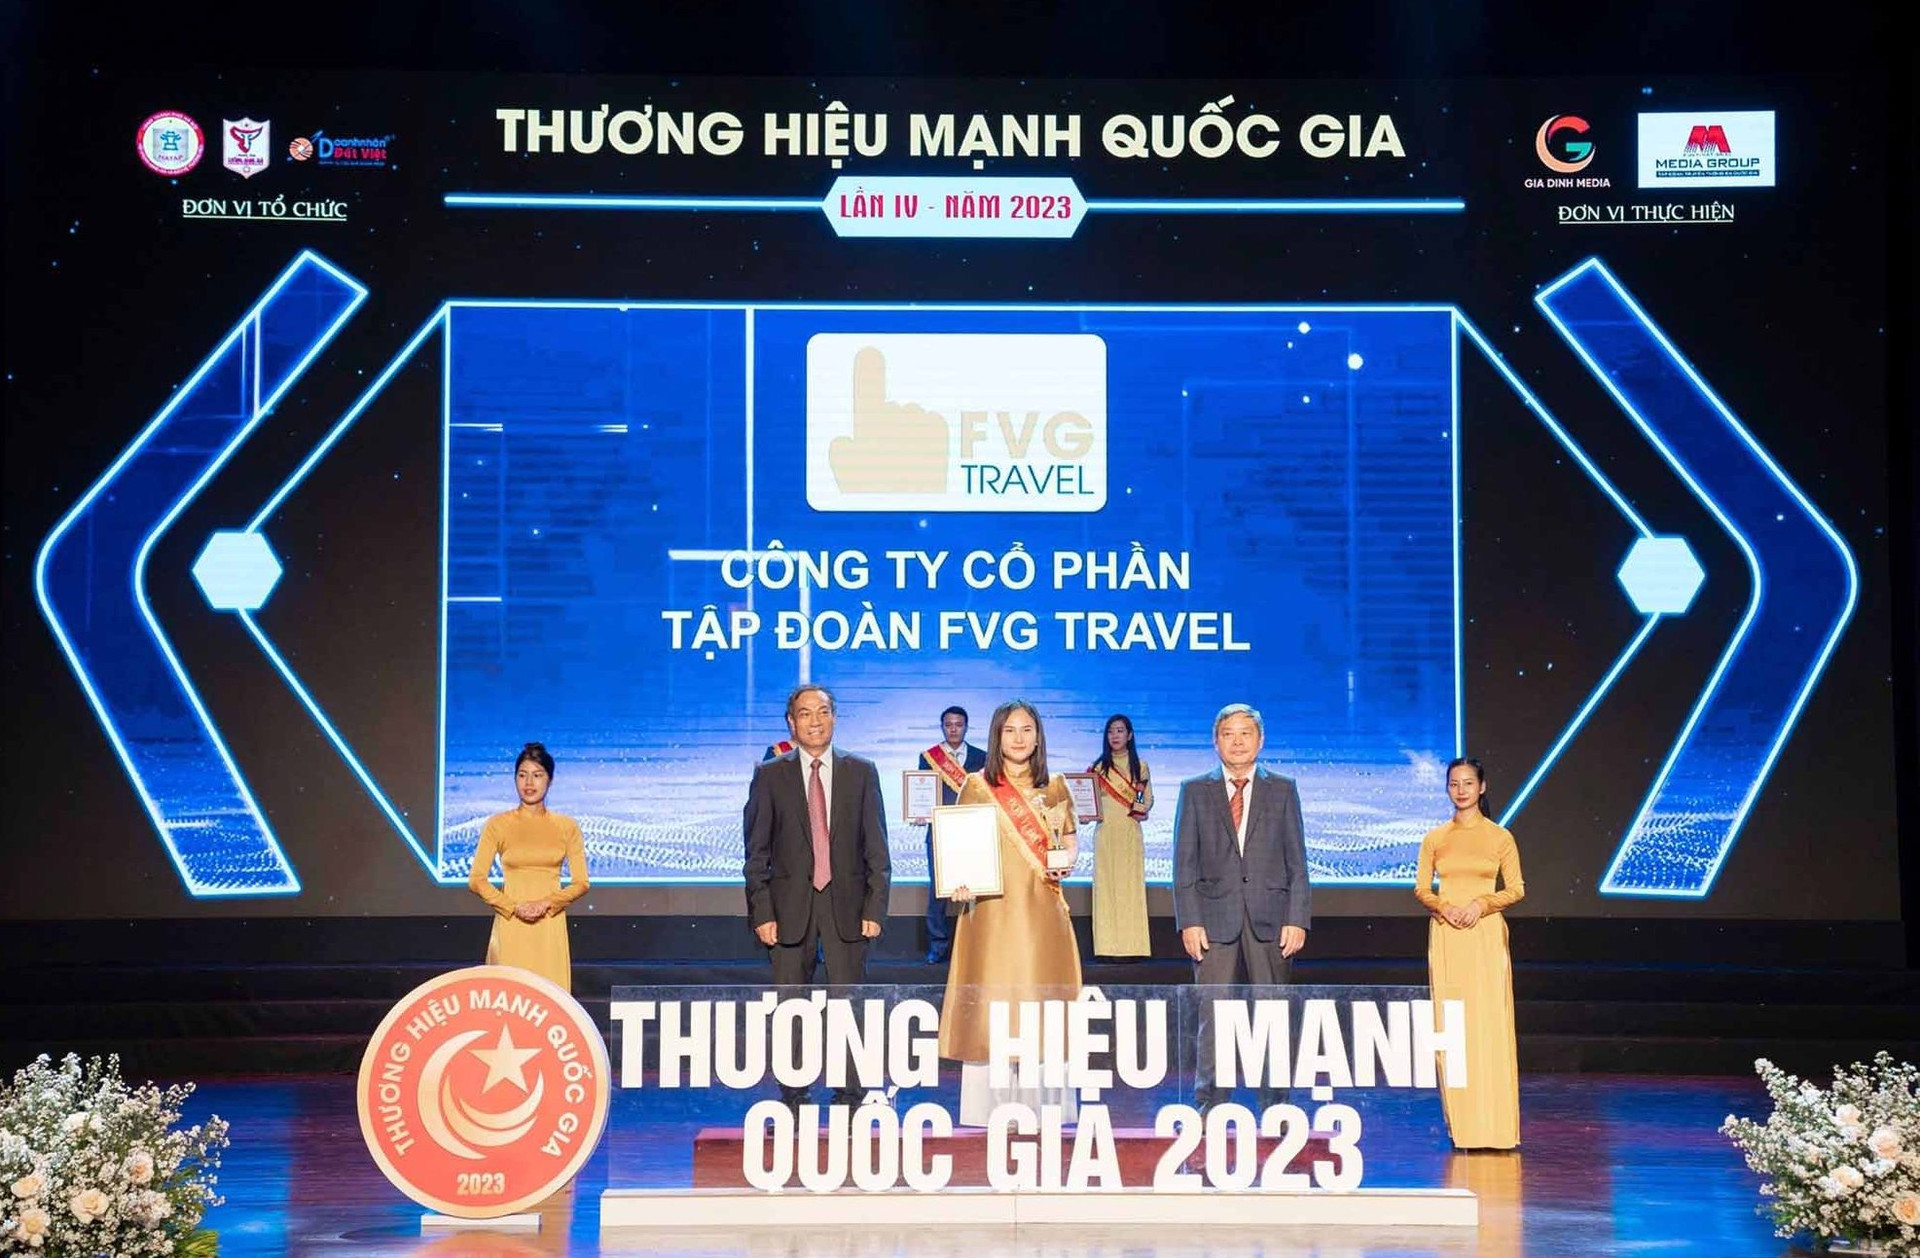 Công ty CP Tập đoàn FVG Travel được vinh danh giải thưởng “Thương hiệu mạnh quốc gia năm 2023”. Ảnh: TPT